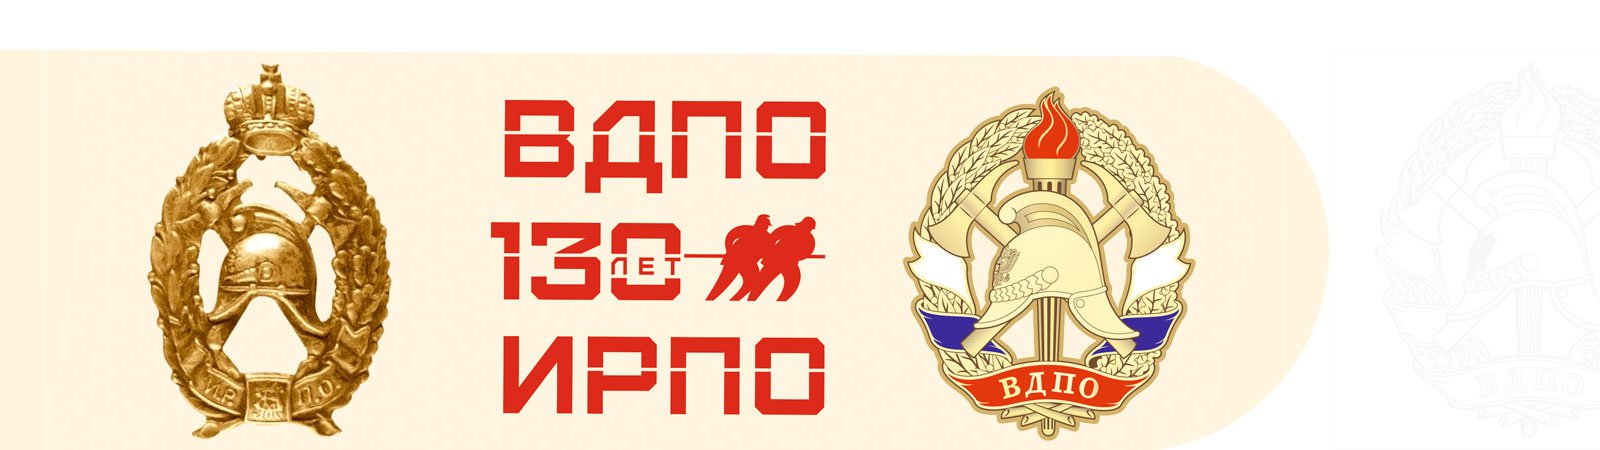 130 Лет ВДПО. ВДПО логотип. ЦС ВДПО. Знак 130 лет ВДПО. Добровольное пожарное общество флаг